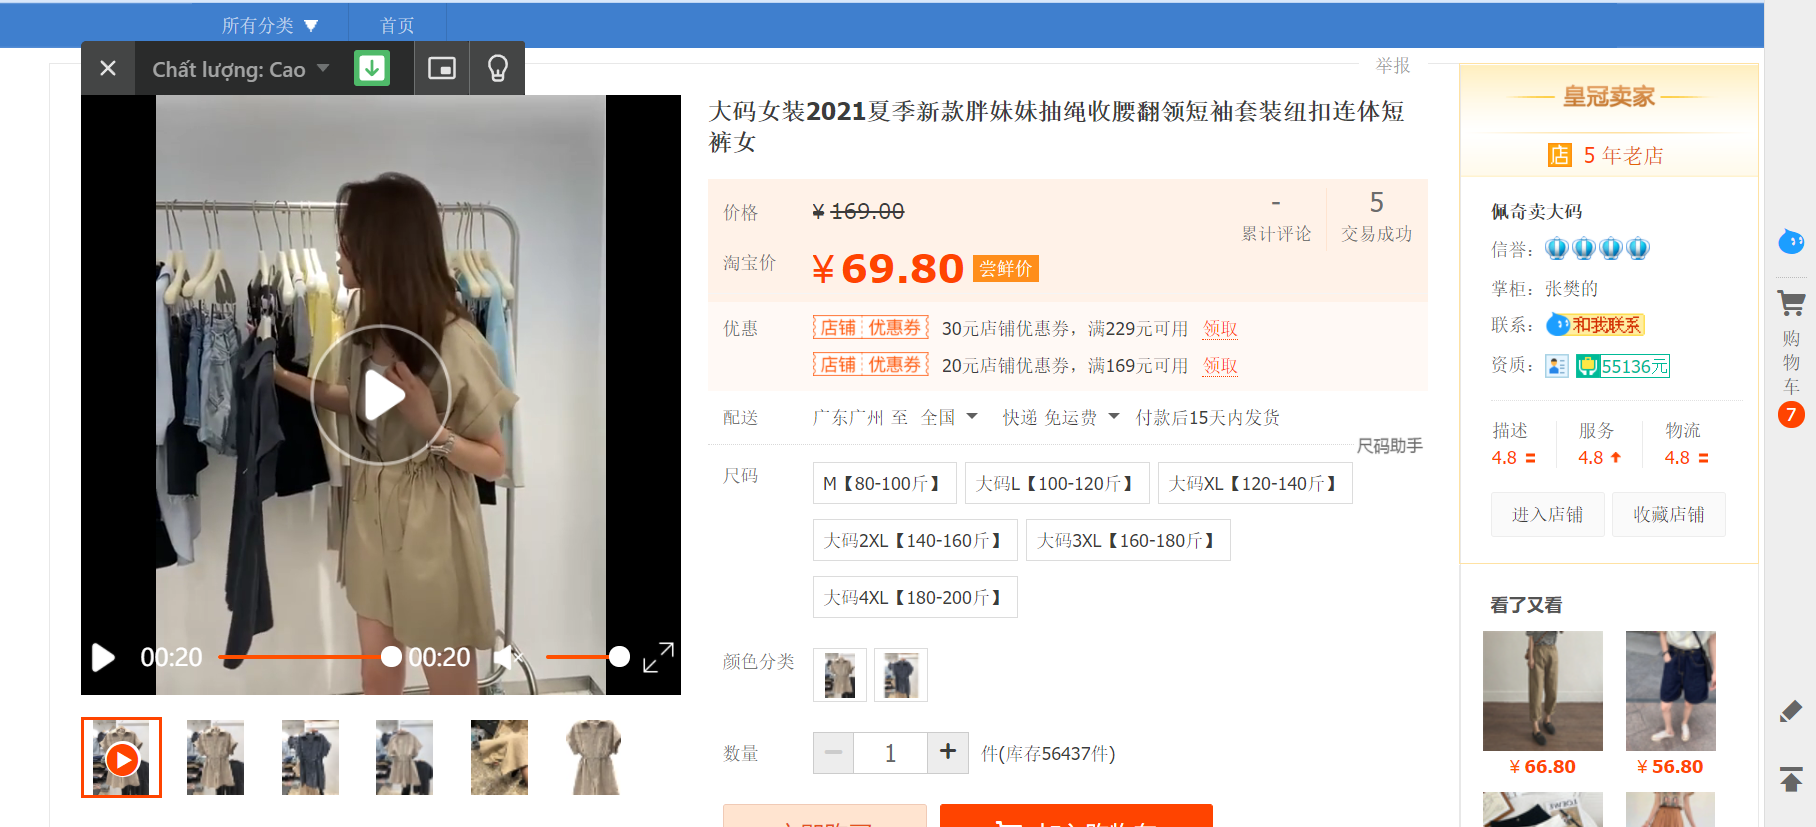 Tại sao sử dụng video Taobao làm quảng cáo